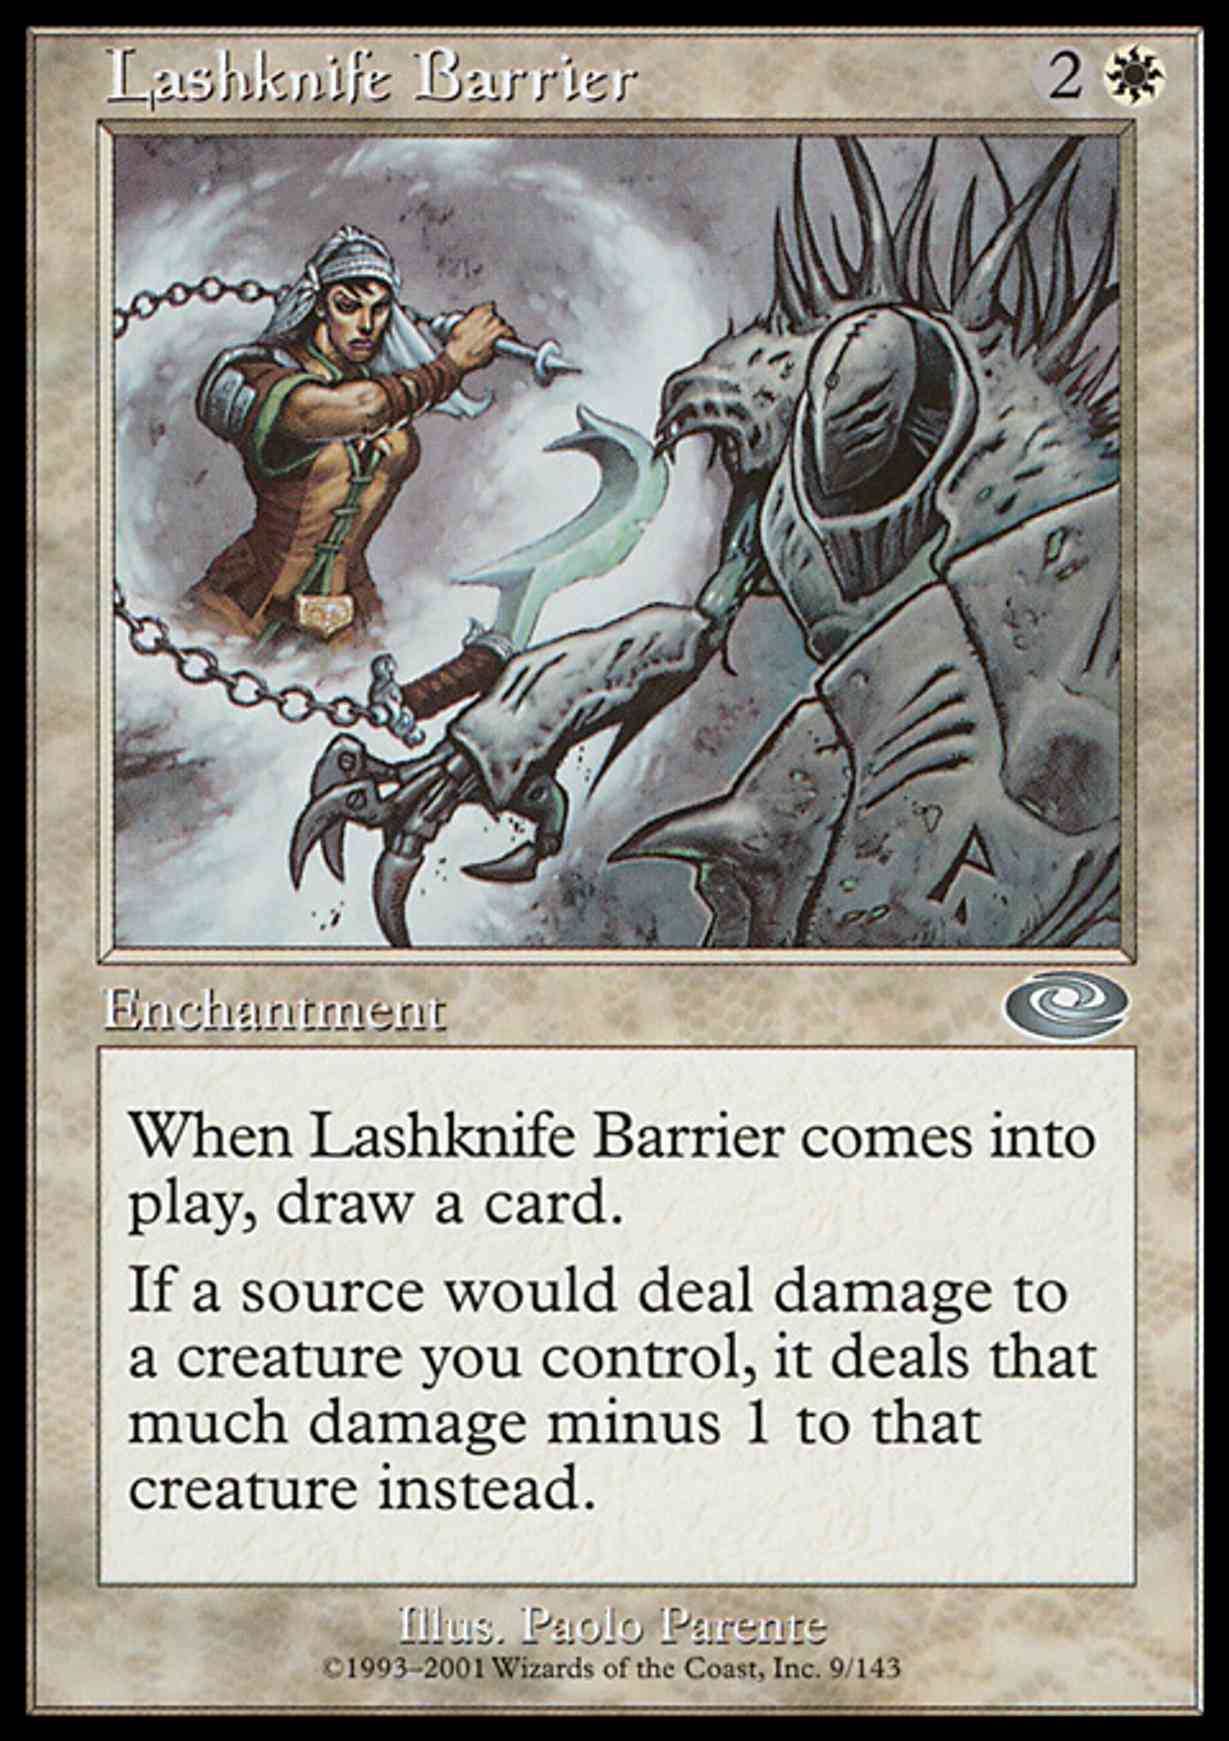 Lashknife Barrier magic card front